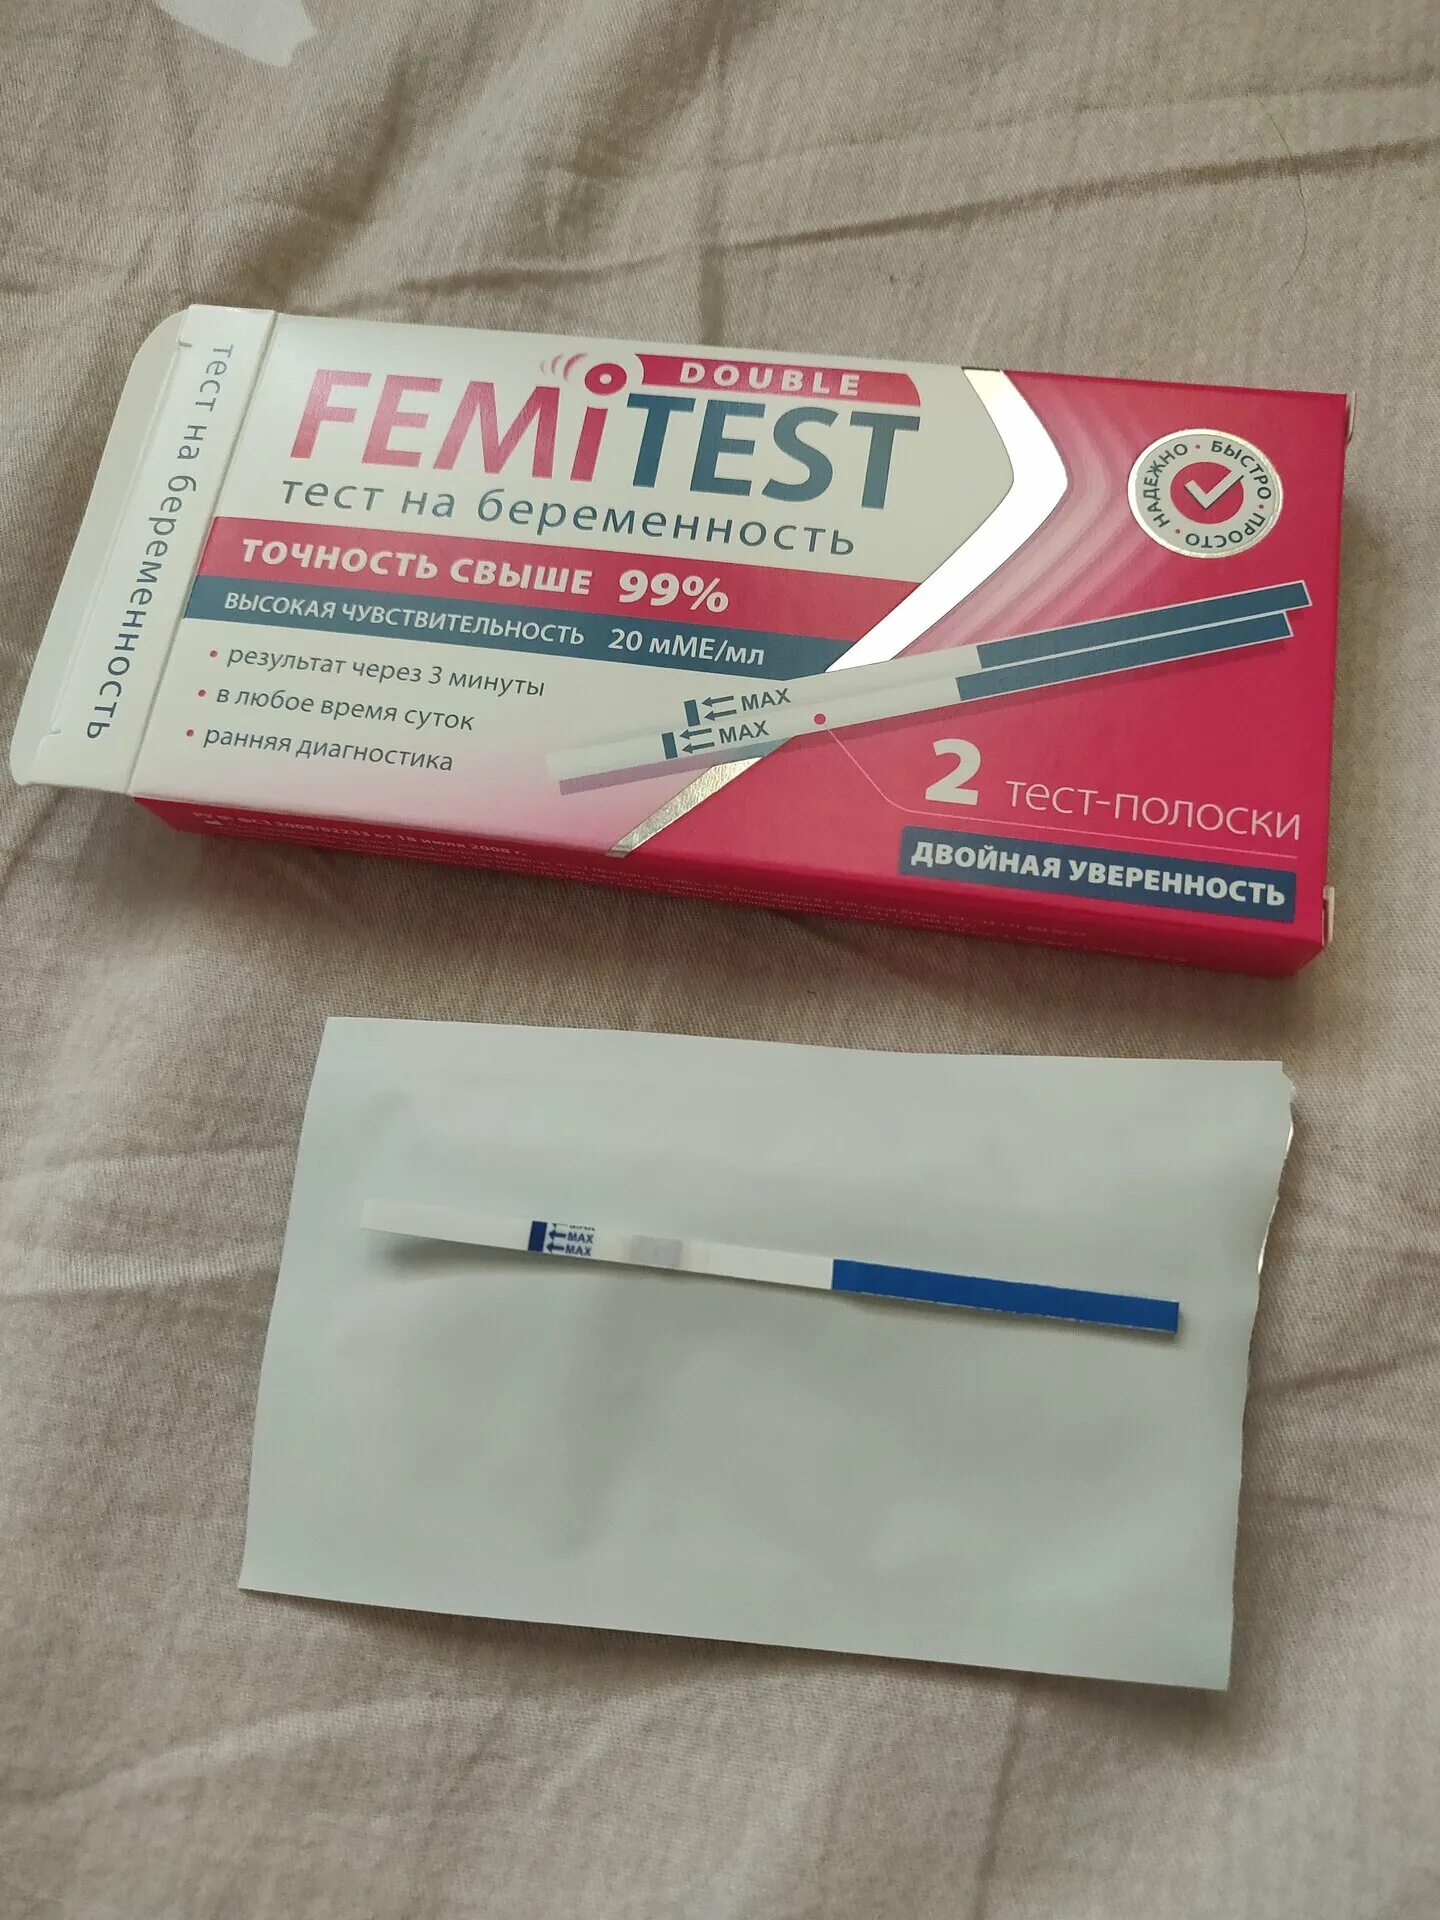 Femitest Ultra 10 ММЕ/мл тест полоска. Струйный тест на беременность femitest. Femitest Ultra с чувствительностью 10 ММЕ/мл. Тест-полоски femitest Ultra с чувствительностью 10.